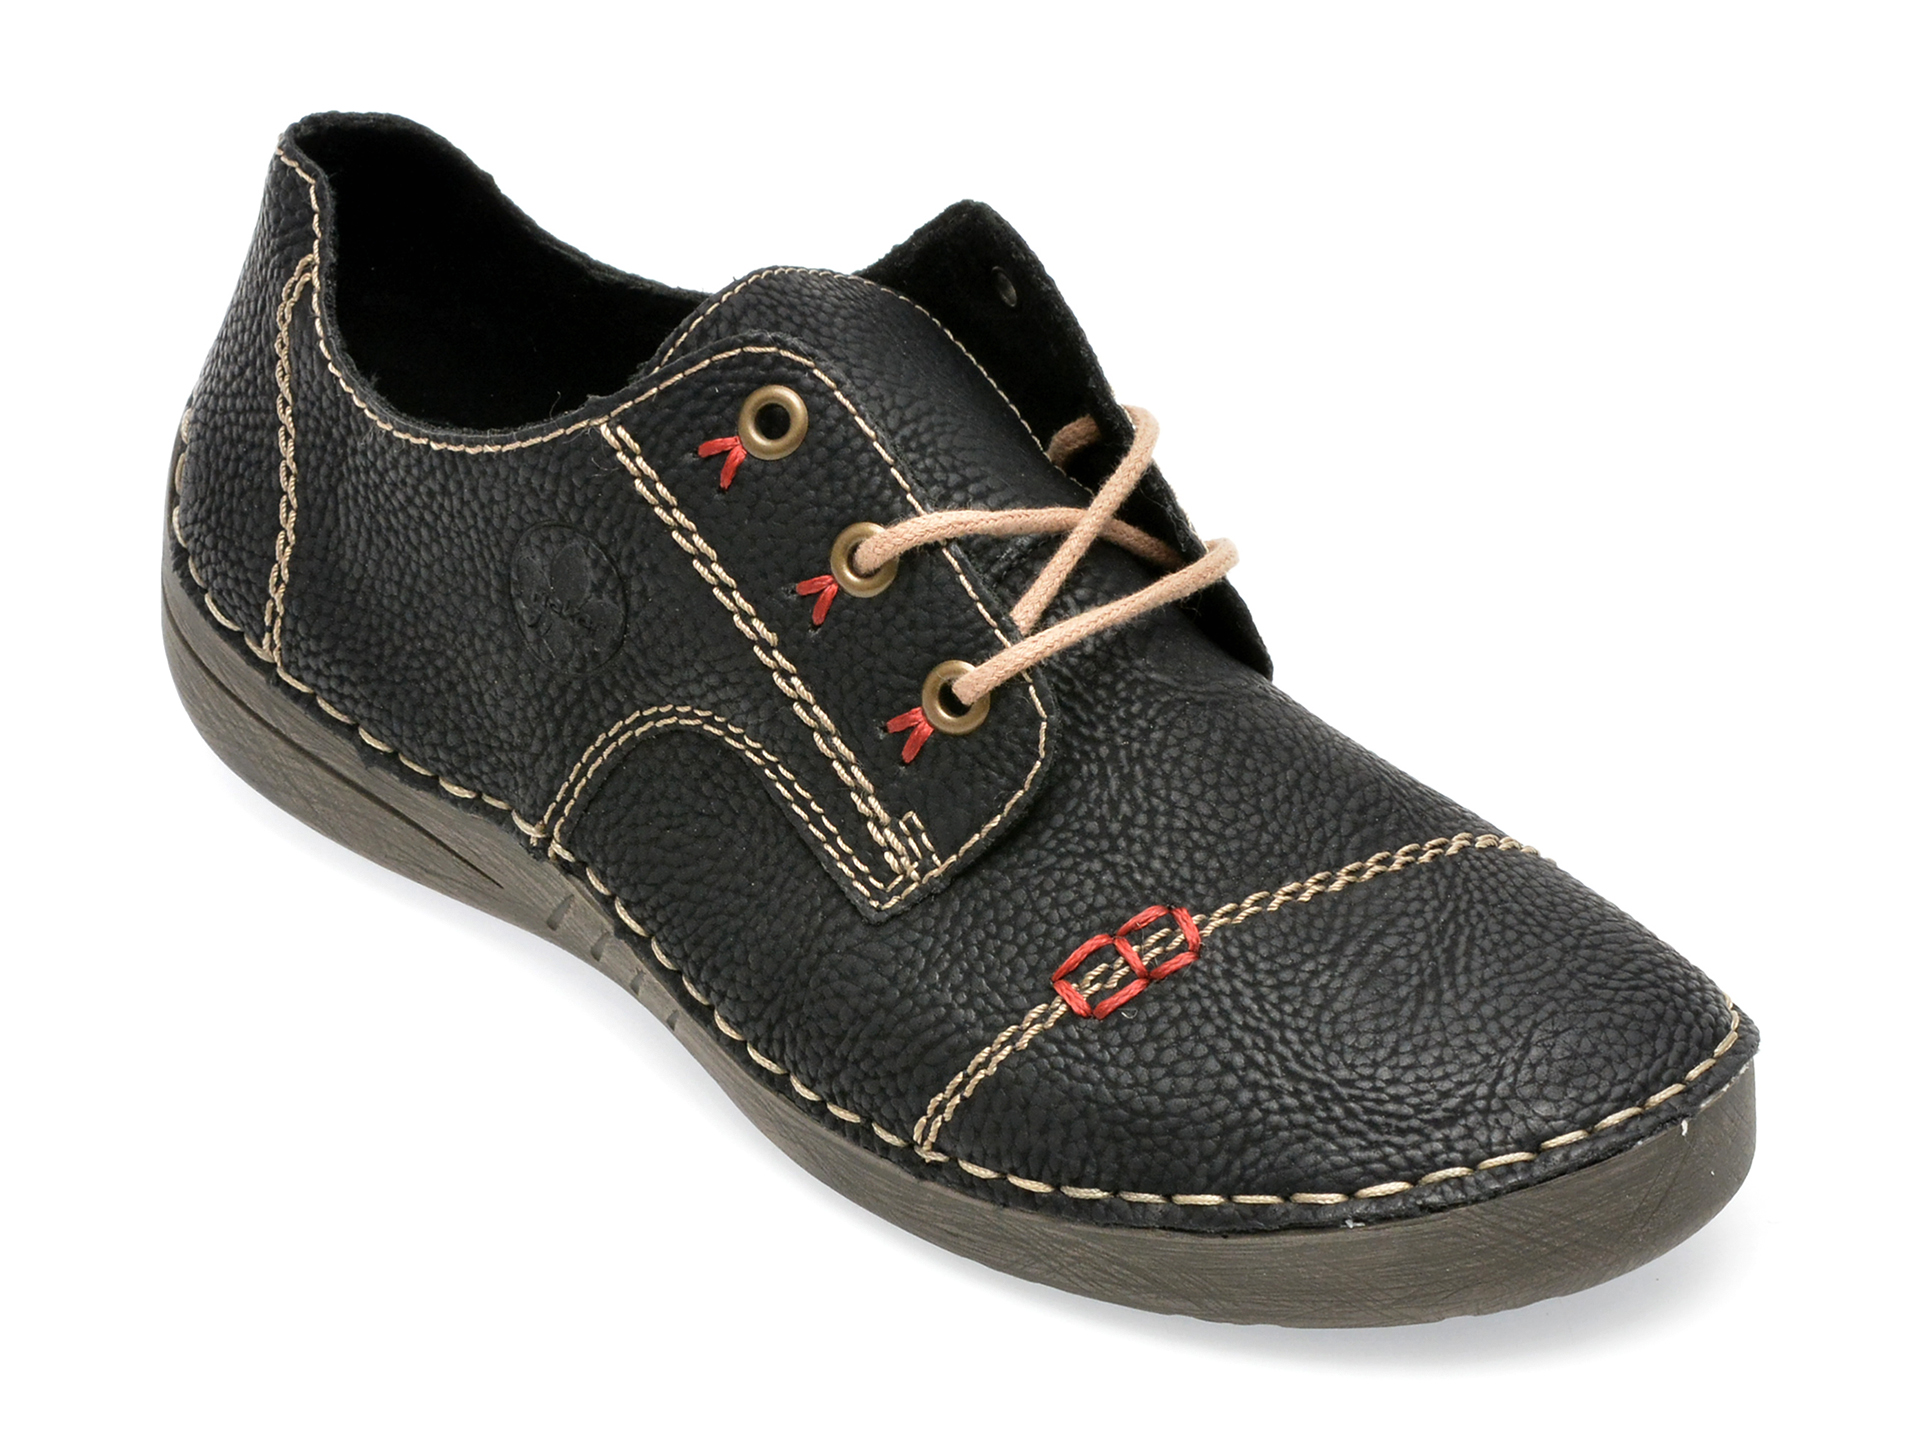 Pantofi RIEKER negri, 52520, din piele ecologica